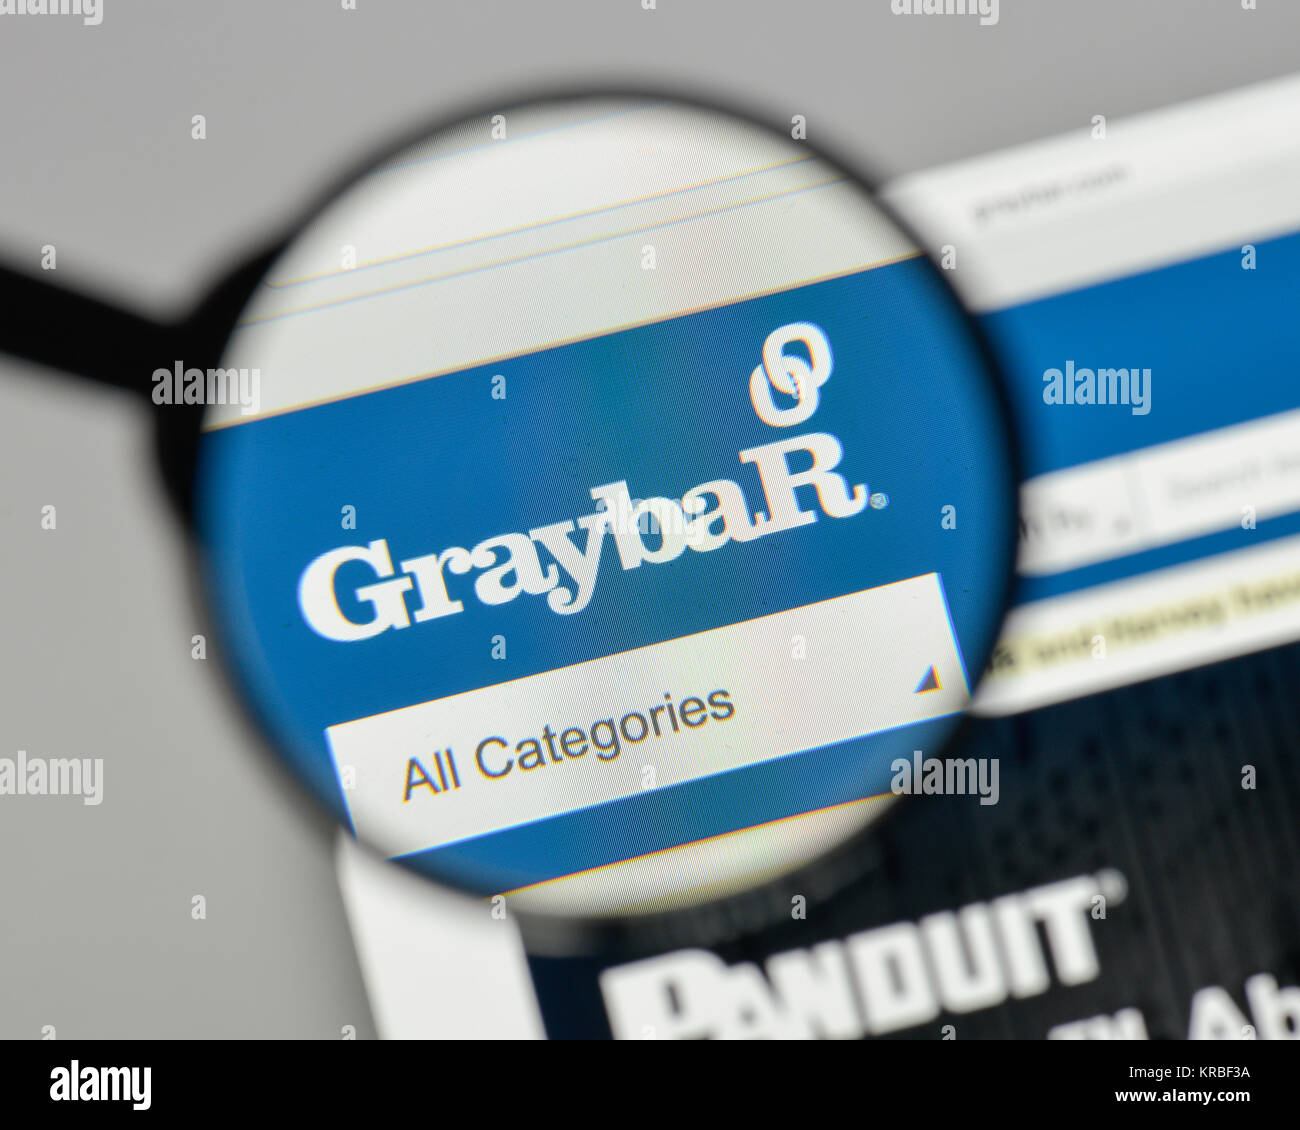 graybar logo